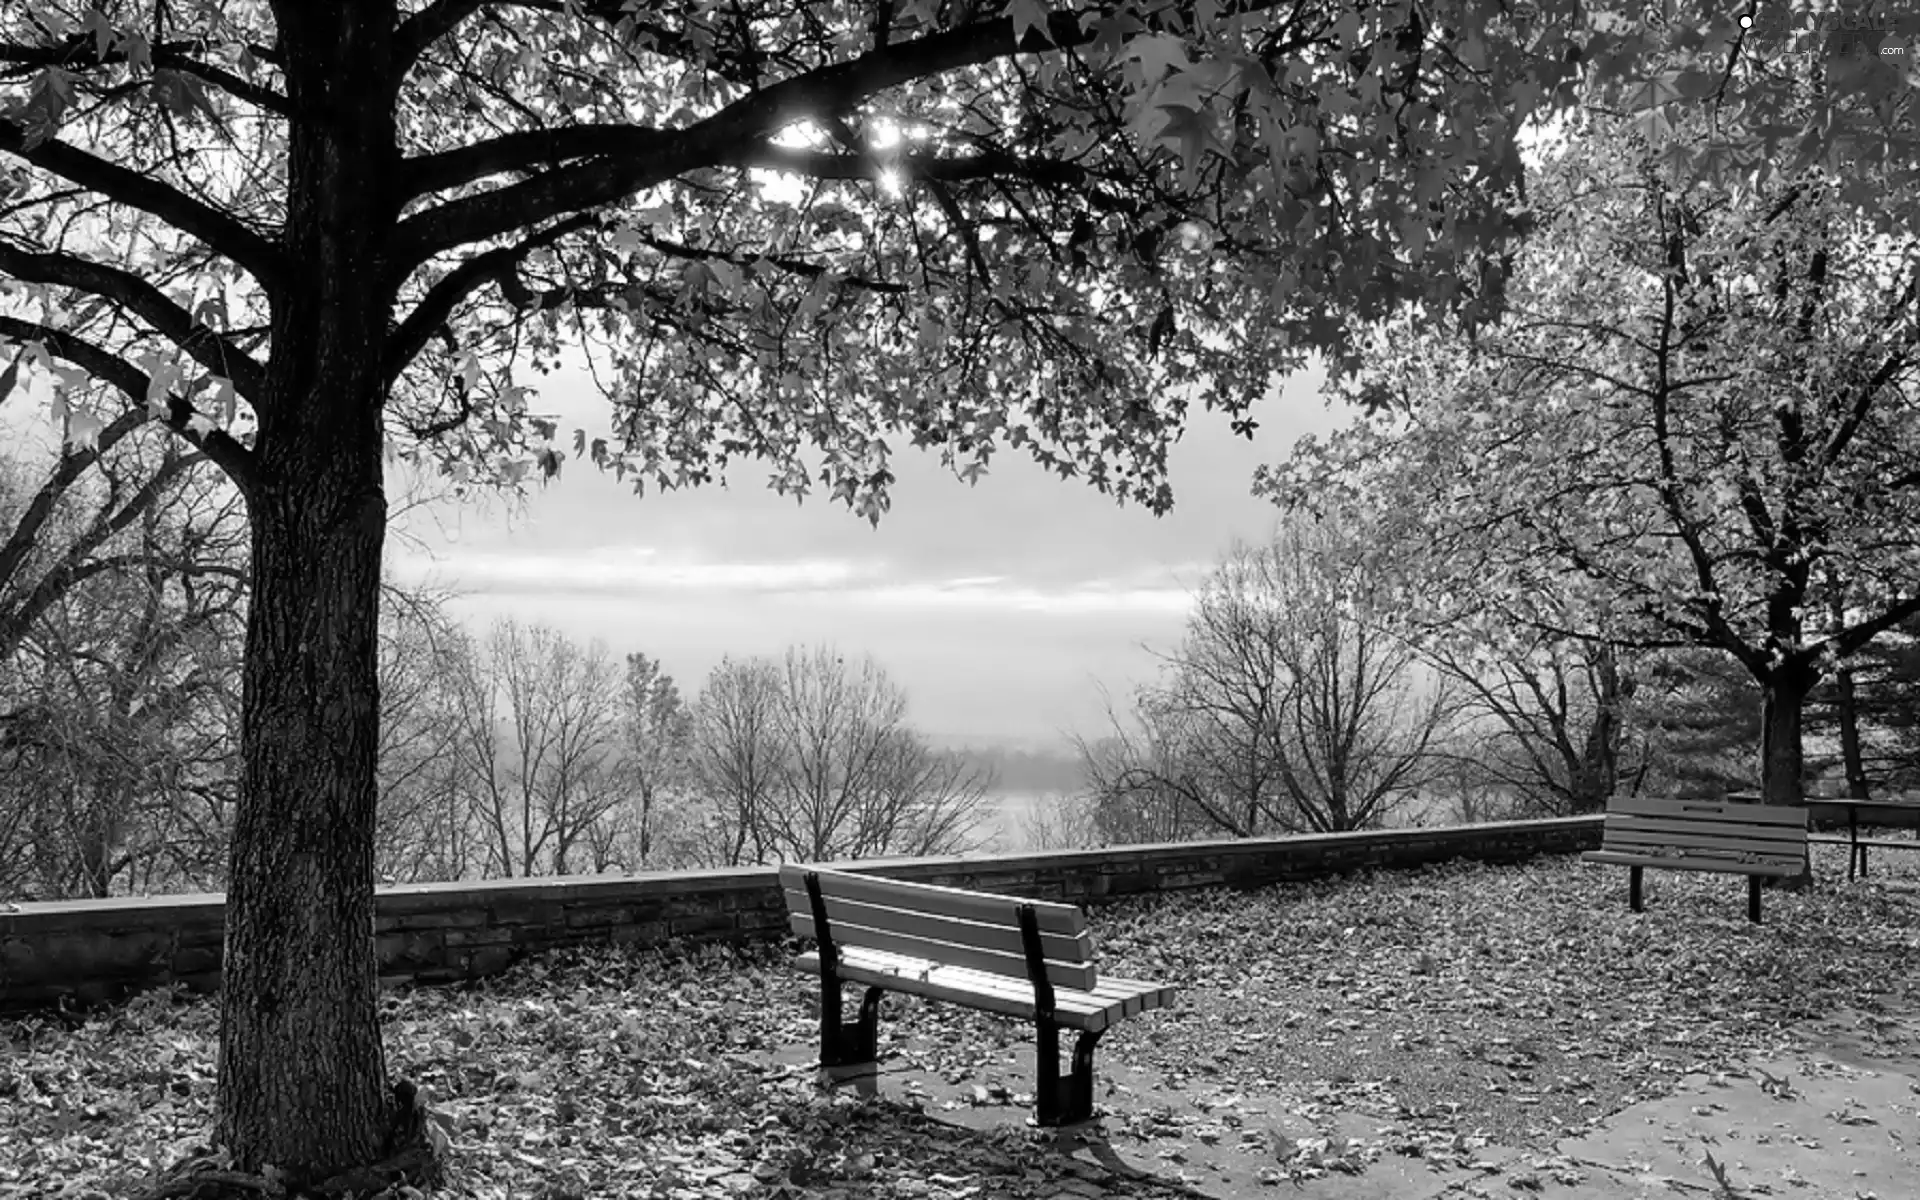 autumn, River, bench, Park